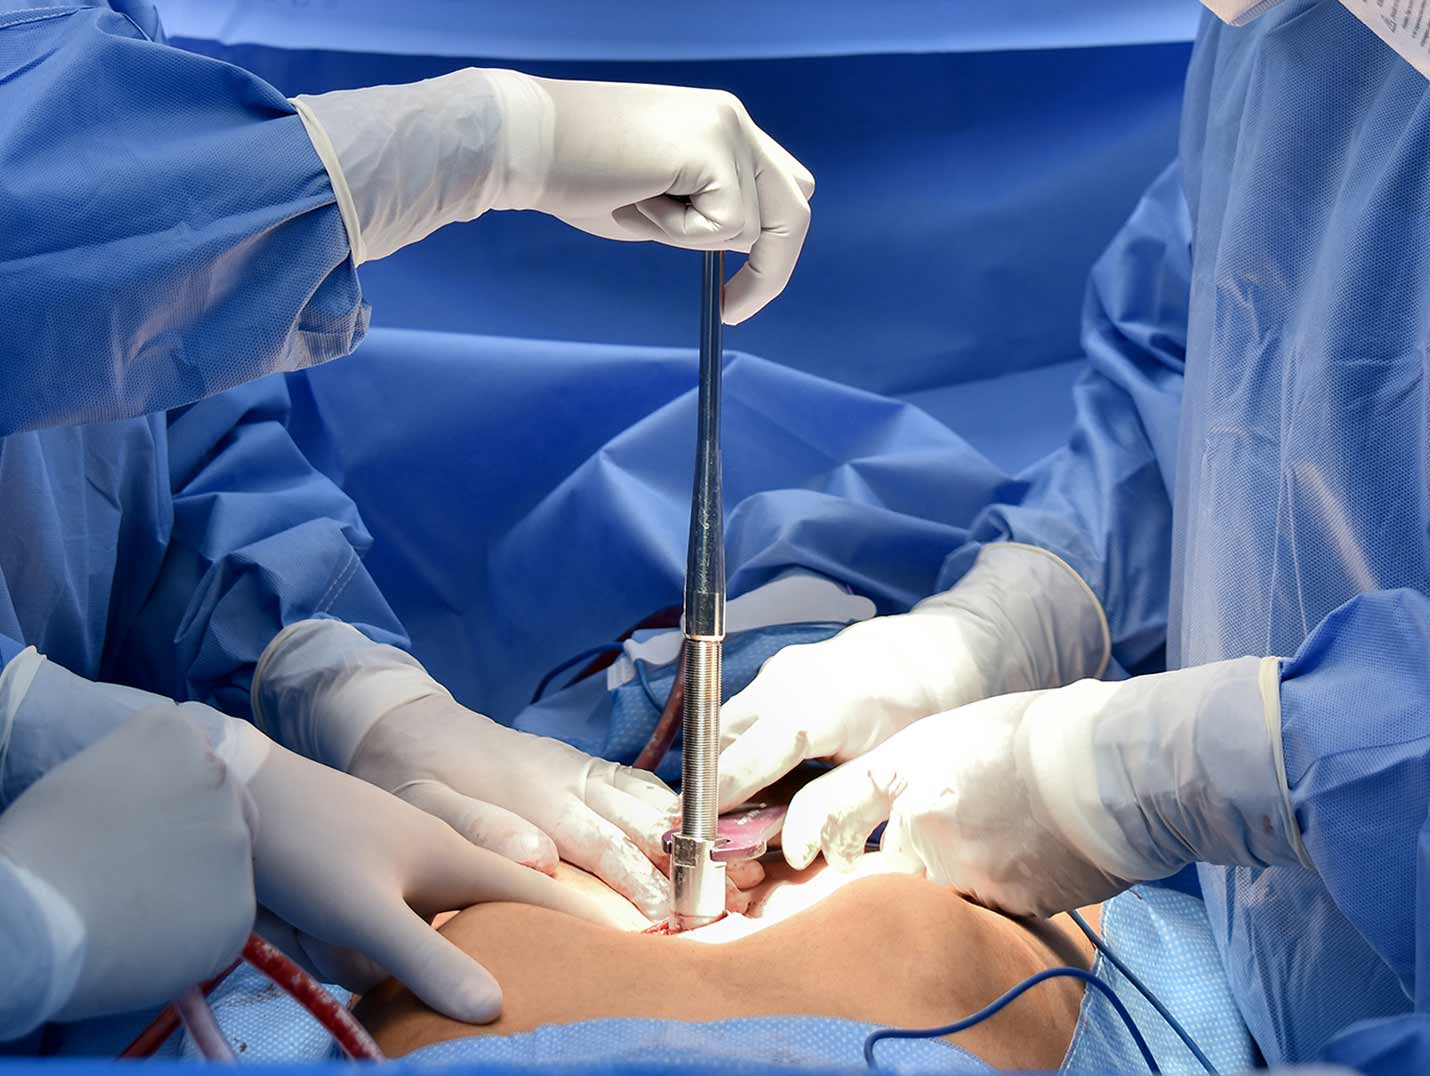 Tres médicos con pijamas azules para cirugía y guantes blancos realizando una cirugía torácica